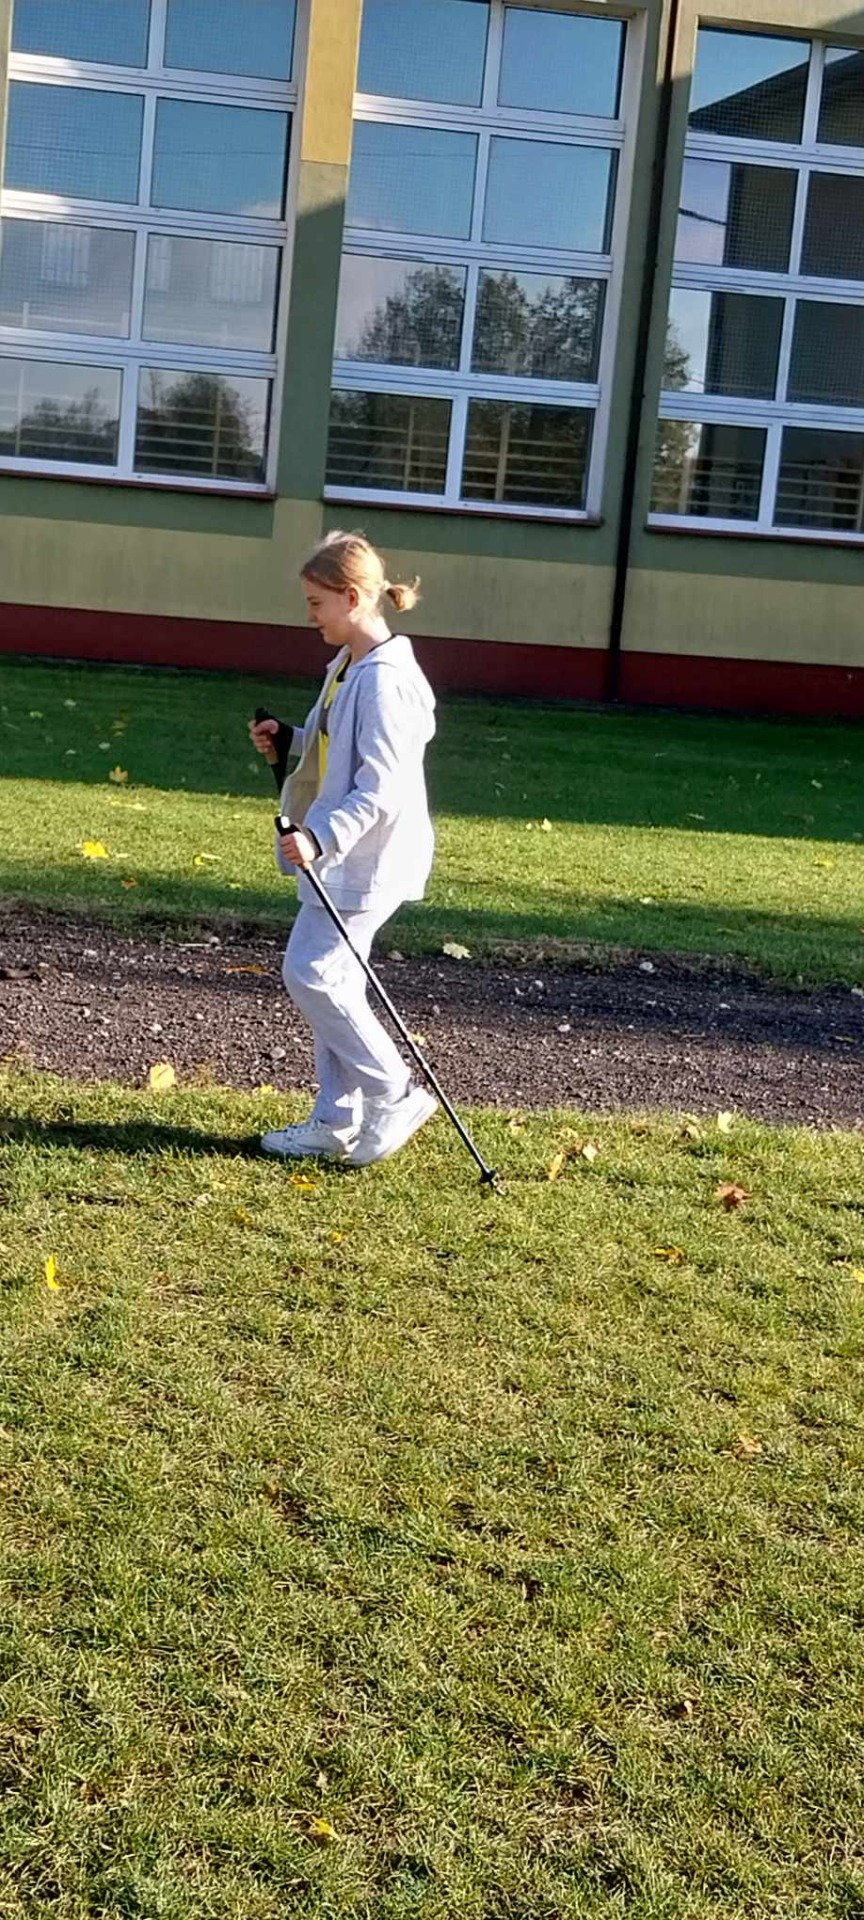 Uczniowie uprawiają nordic walking na szkolnym boisku